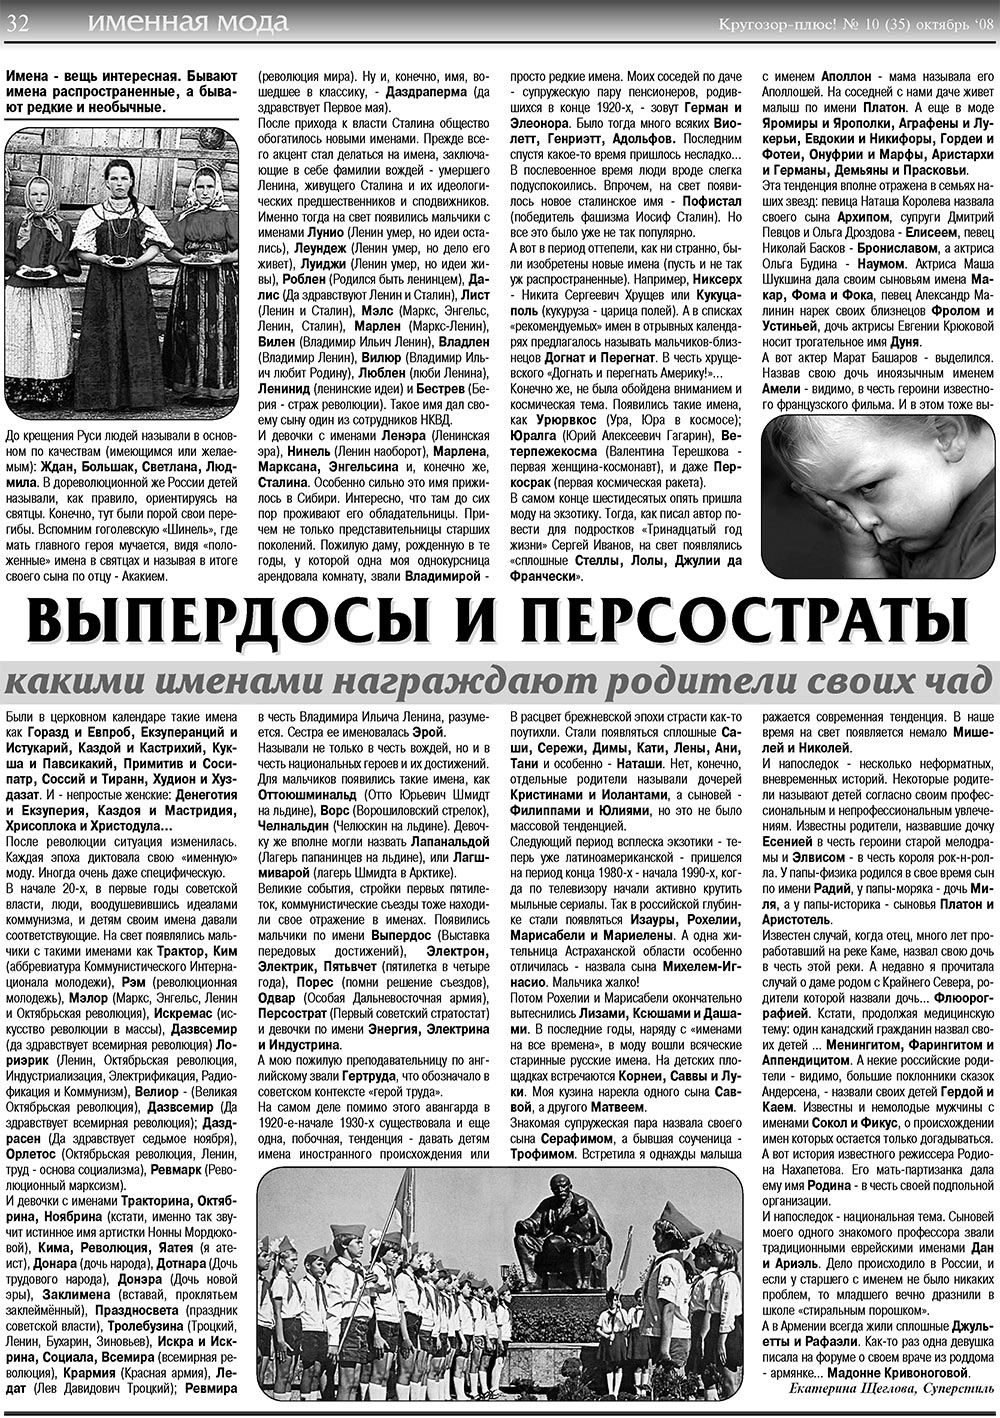 Кругозор плюс!, газета. 2008 №10 стр.32